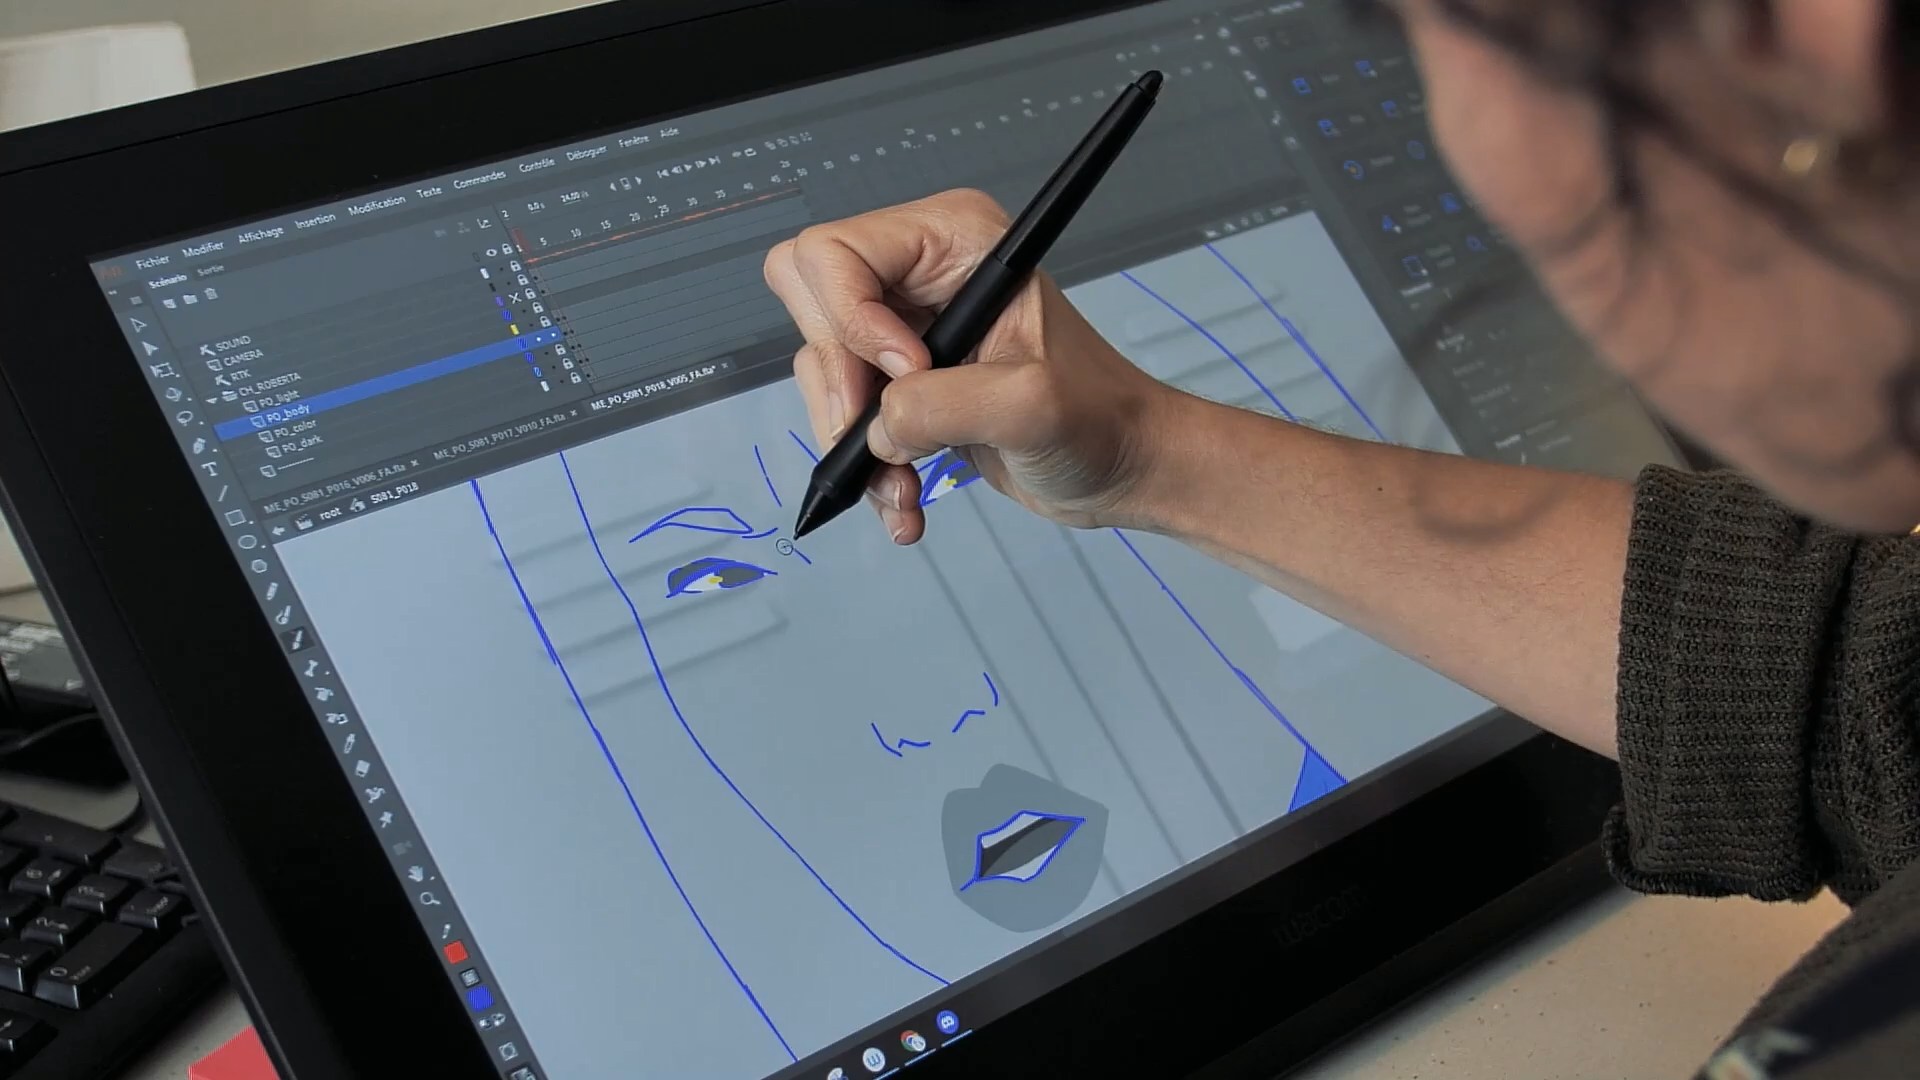 Une animatrice travaille sur une tablette graphique pour tracer les contours d'un personnage